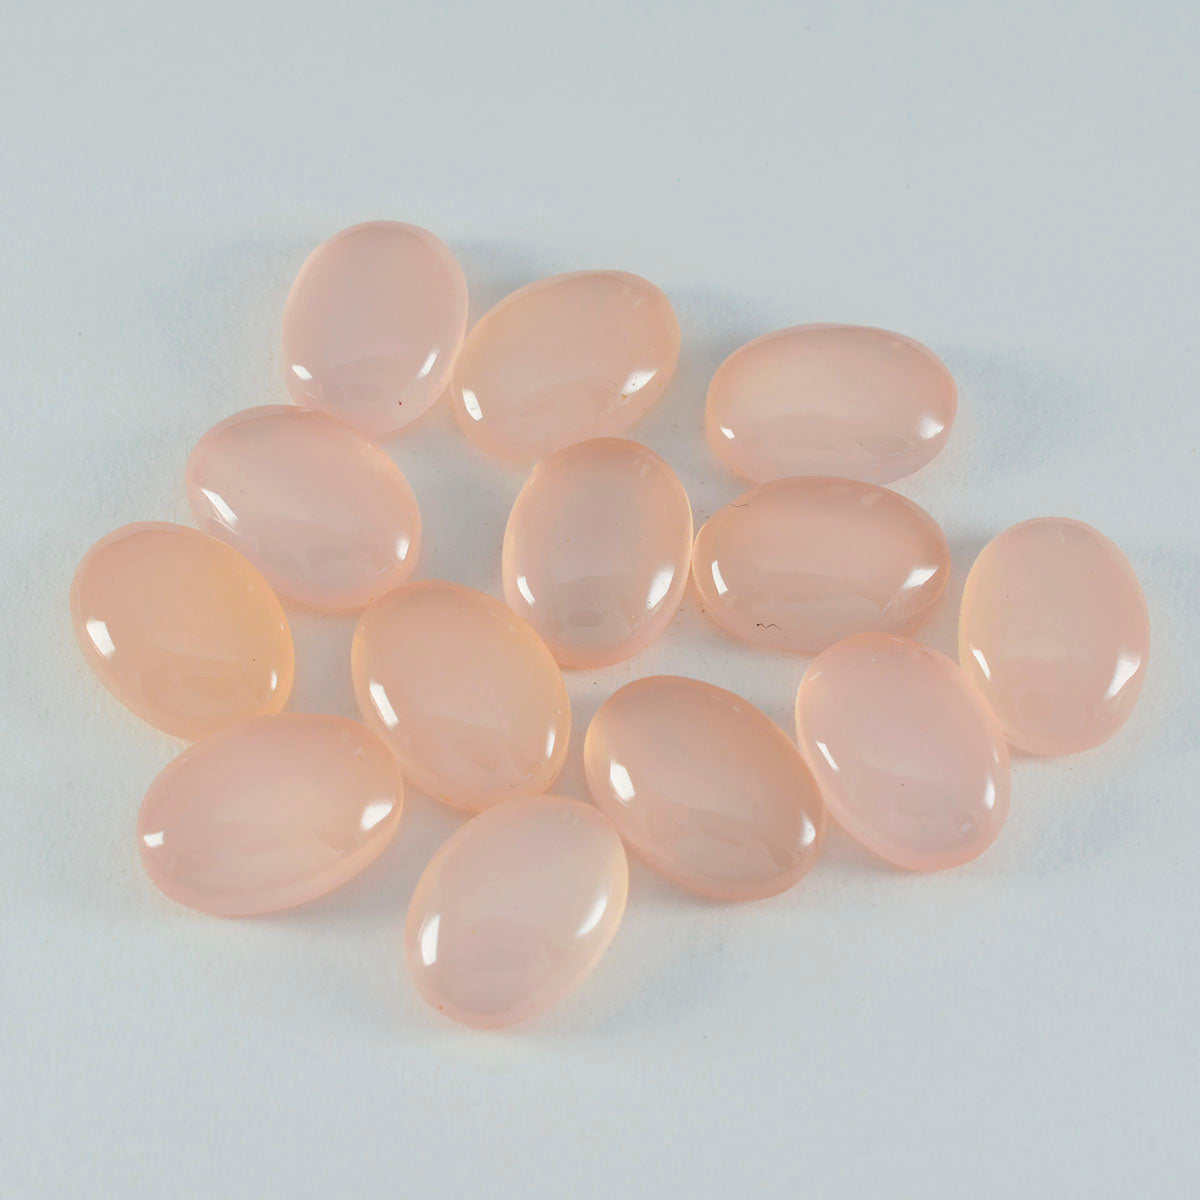 Riyogems 1PC roze rozenkwarts cabochon 8x10 mm ovale vorm geweldige kwaliteit losse steen